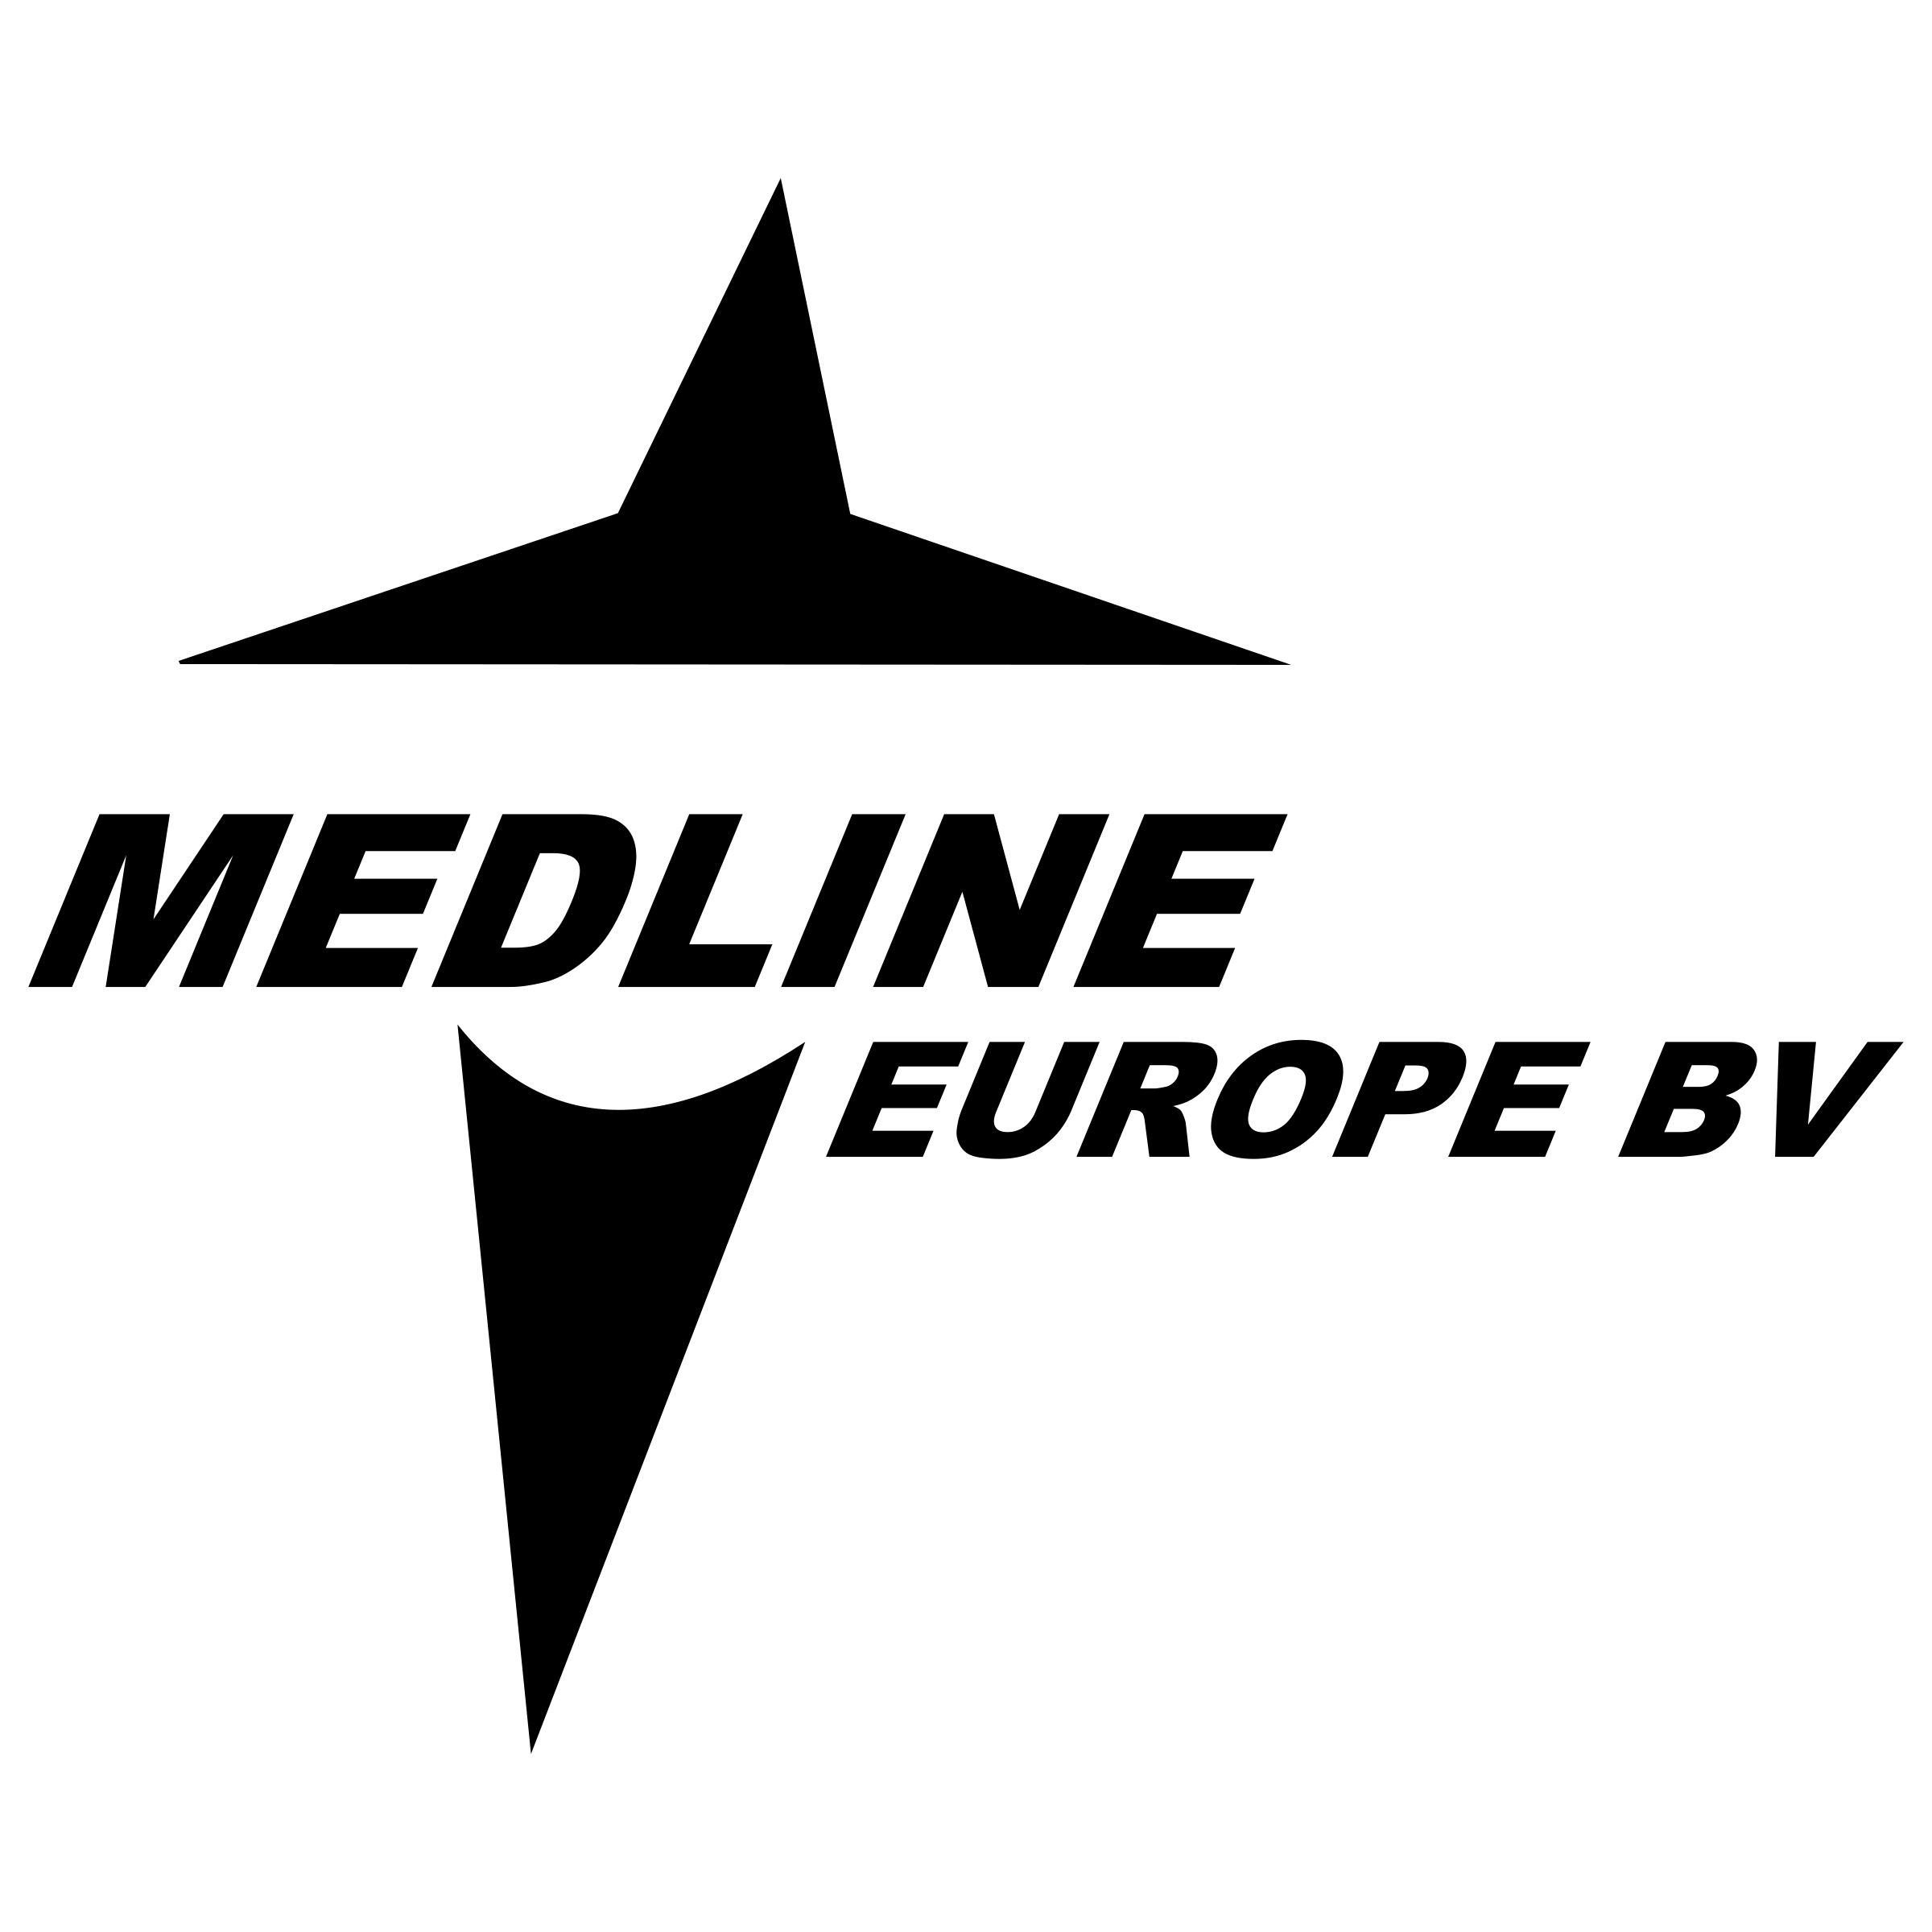 Medline Logo - Medline Europe BV Logo PNG Transparent & SVG Vector - Freebie Supply